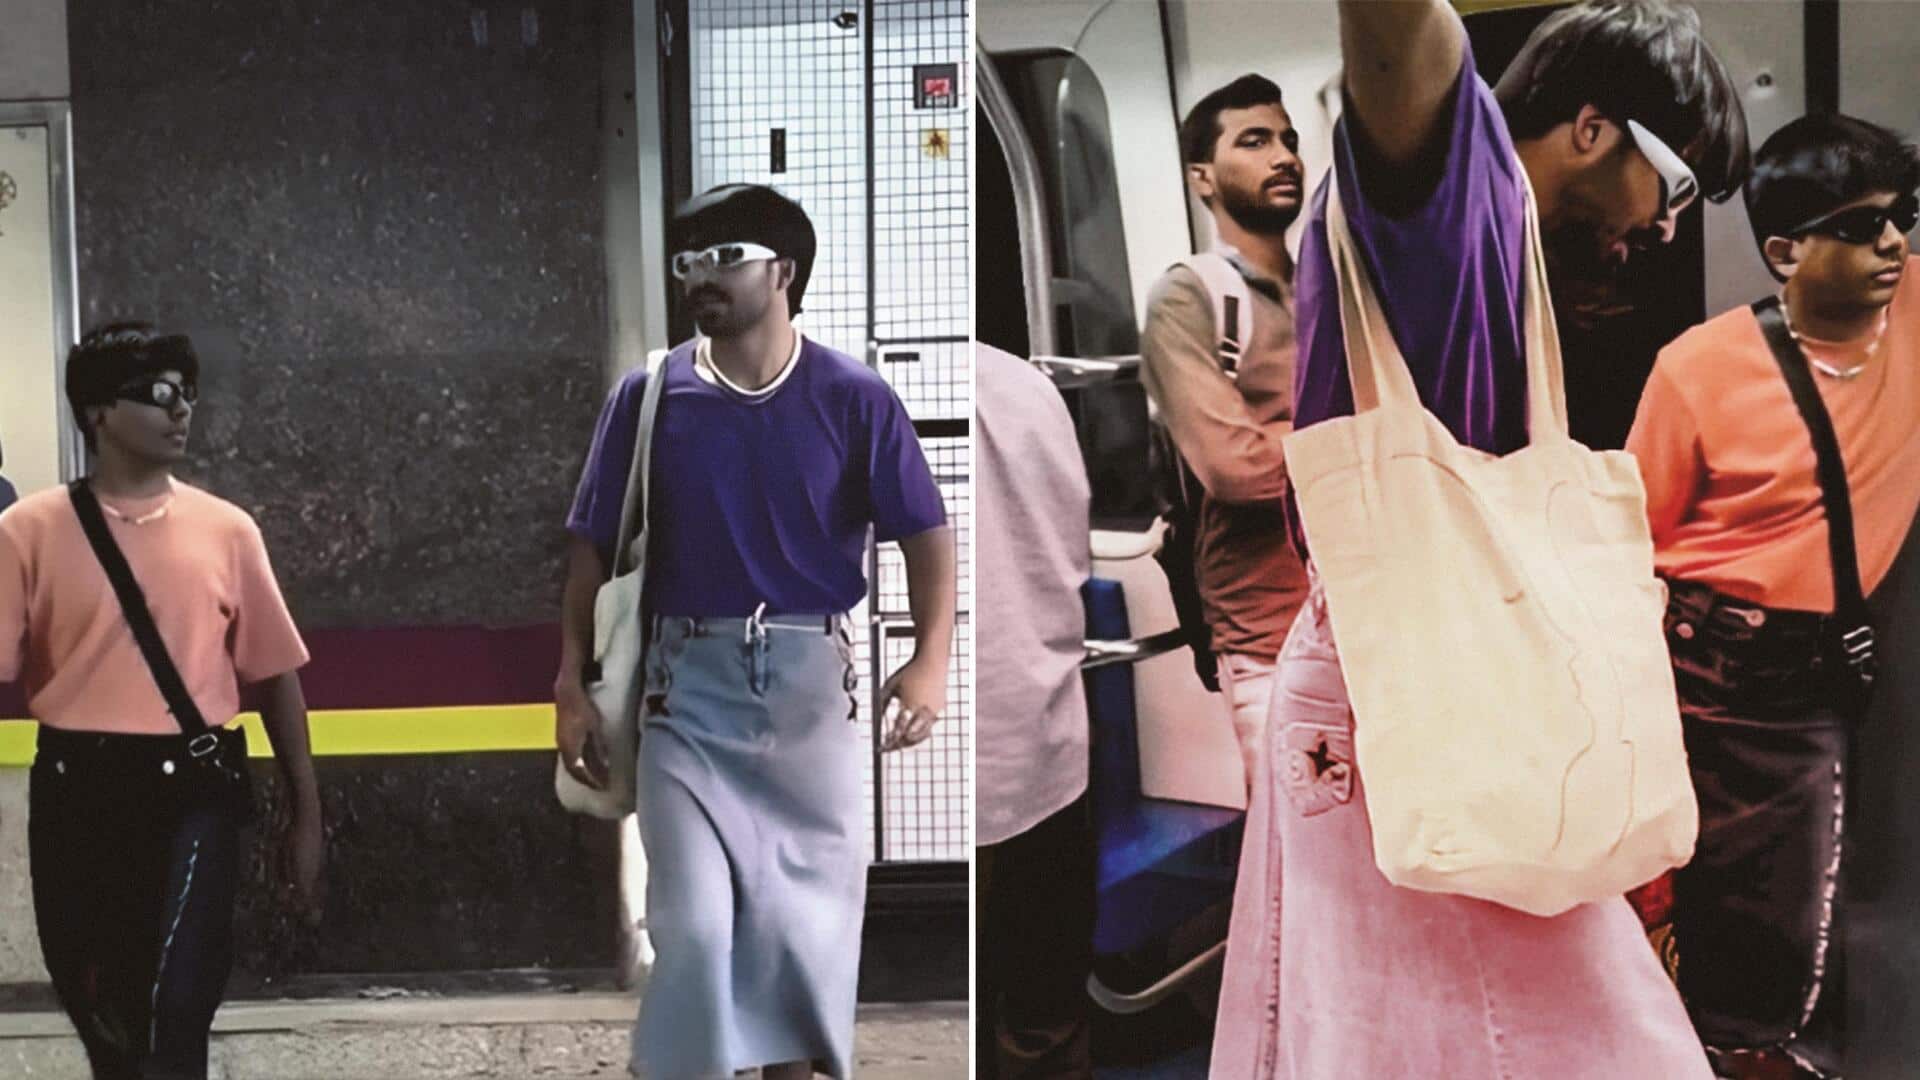 दिल्ली मेट्रो में युवकों ने डेनिम स्कर्ट पहनकर की यात्रा, वायरल हो रहा वीडियो 